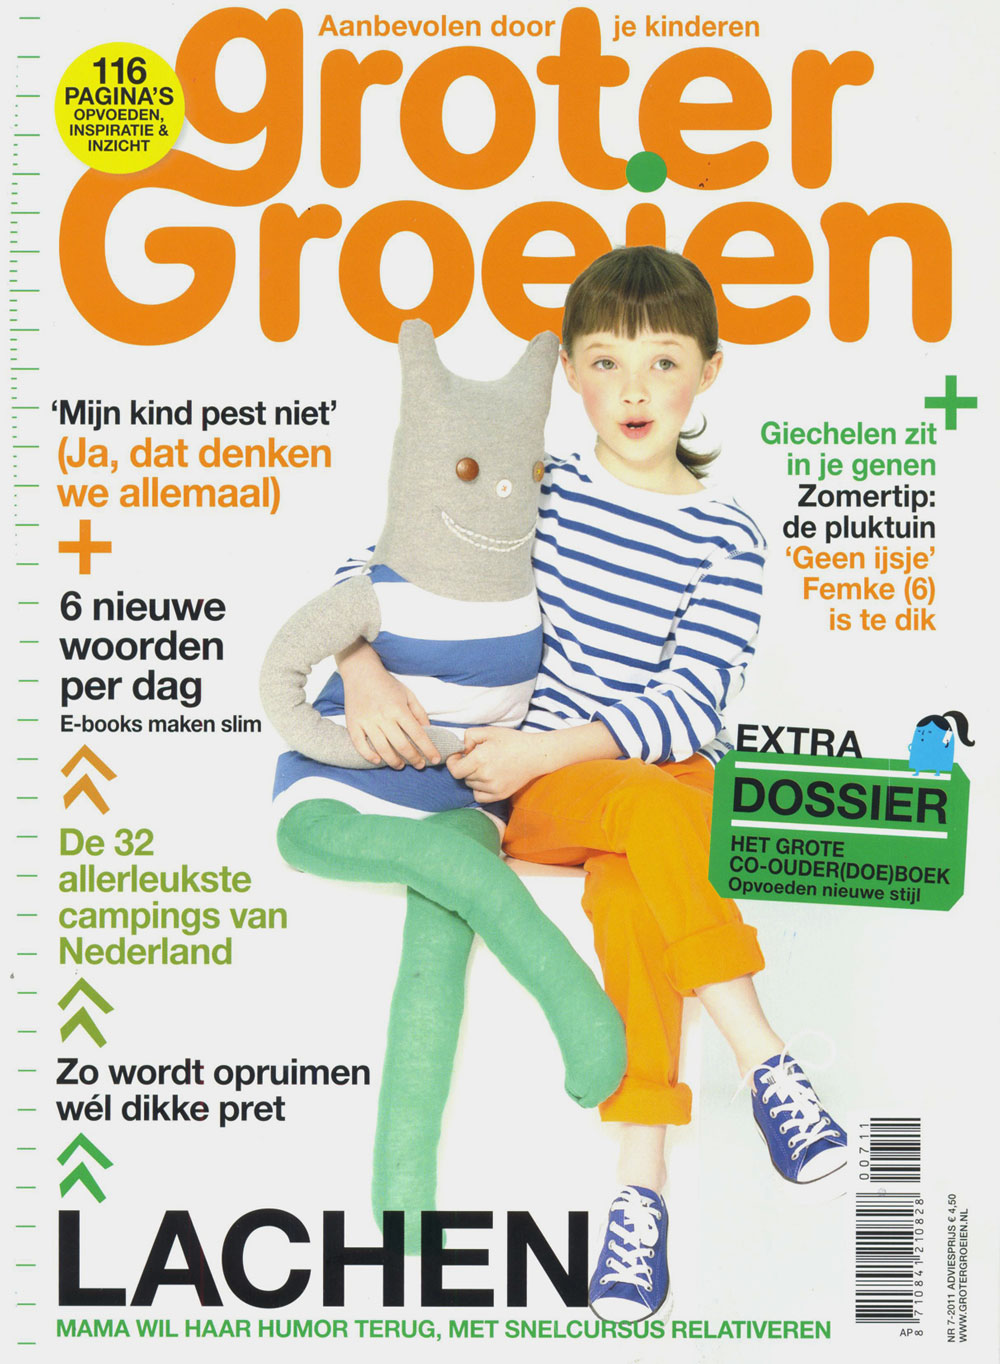 Cover-Groter-Groeien-Juni-2011